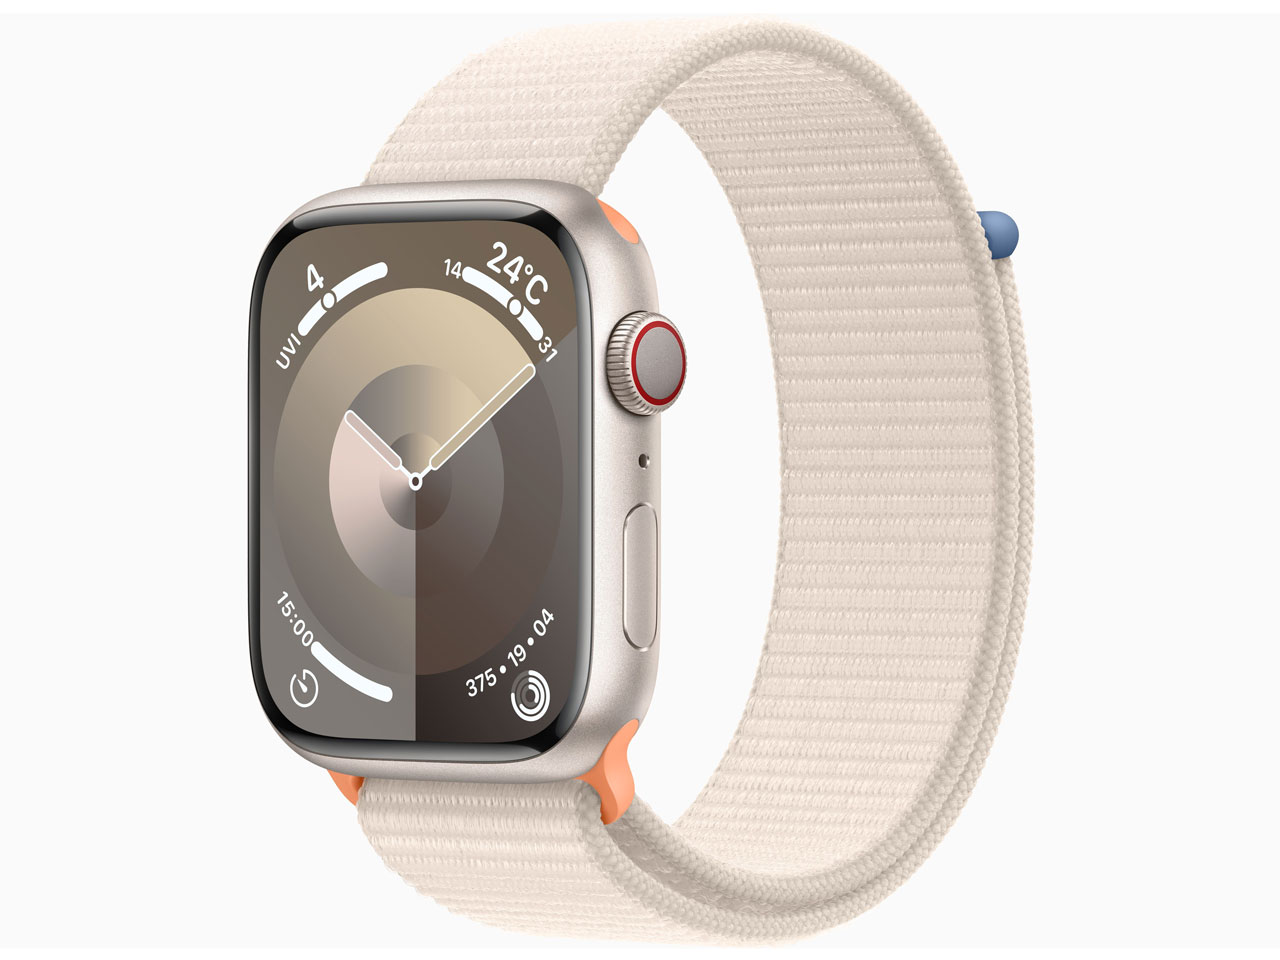 【呪術廻戦】Apple Watch アップルウォッチ A2376 Series 6 GPS Cellular モデル セルラー 44mm スペース ブルー アルミニウム ケース 44mm 腕時計 G4-9 スマートウォッチ本体